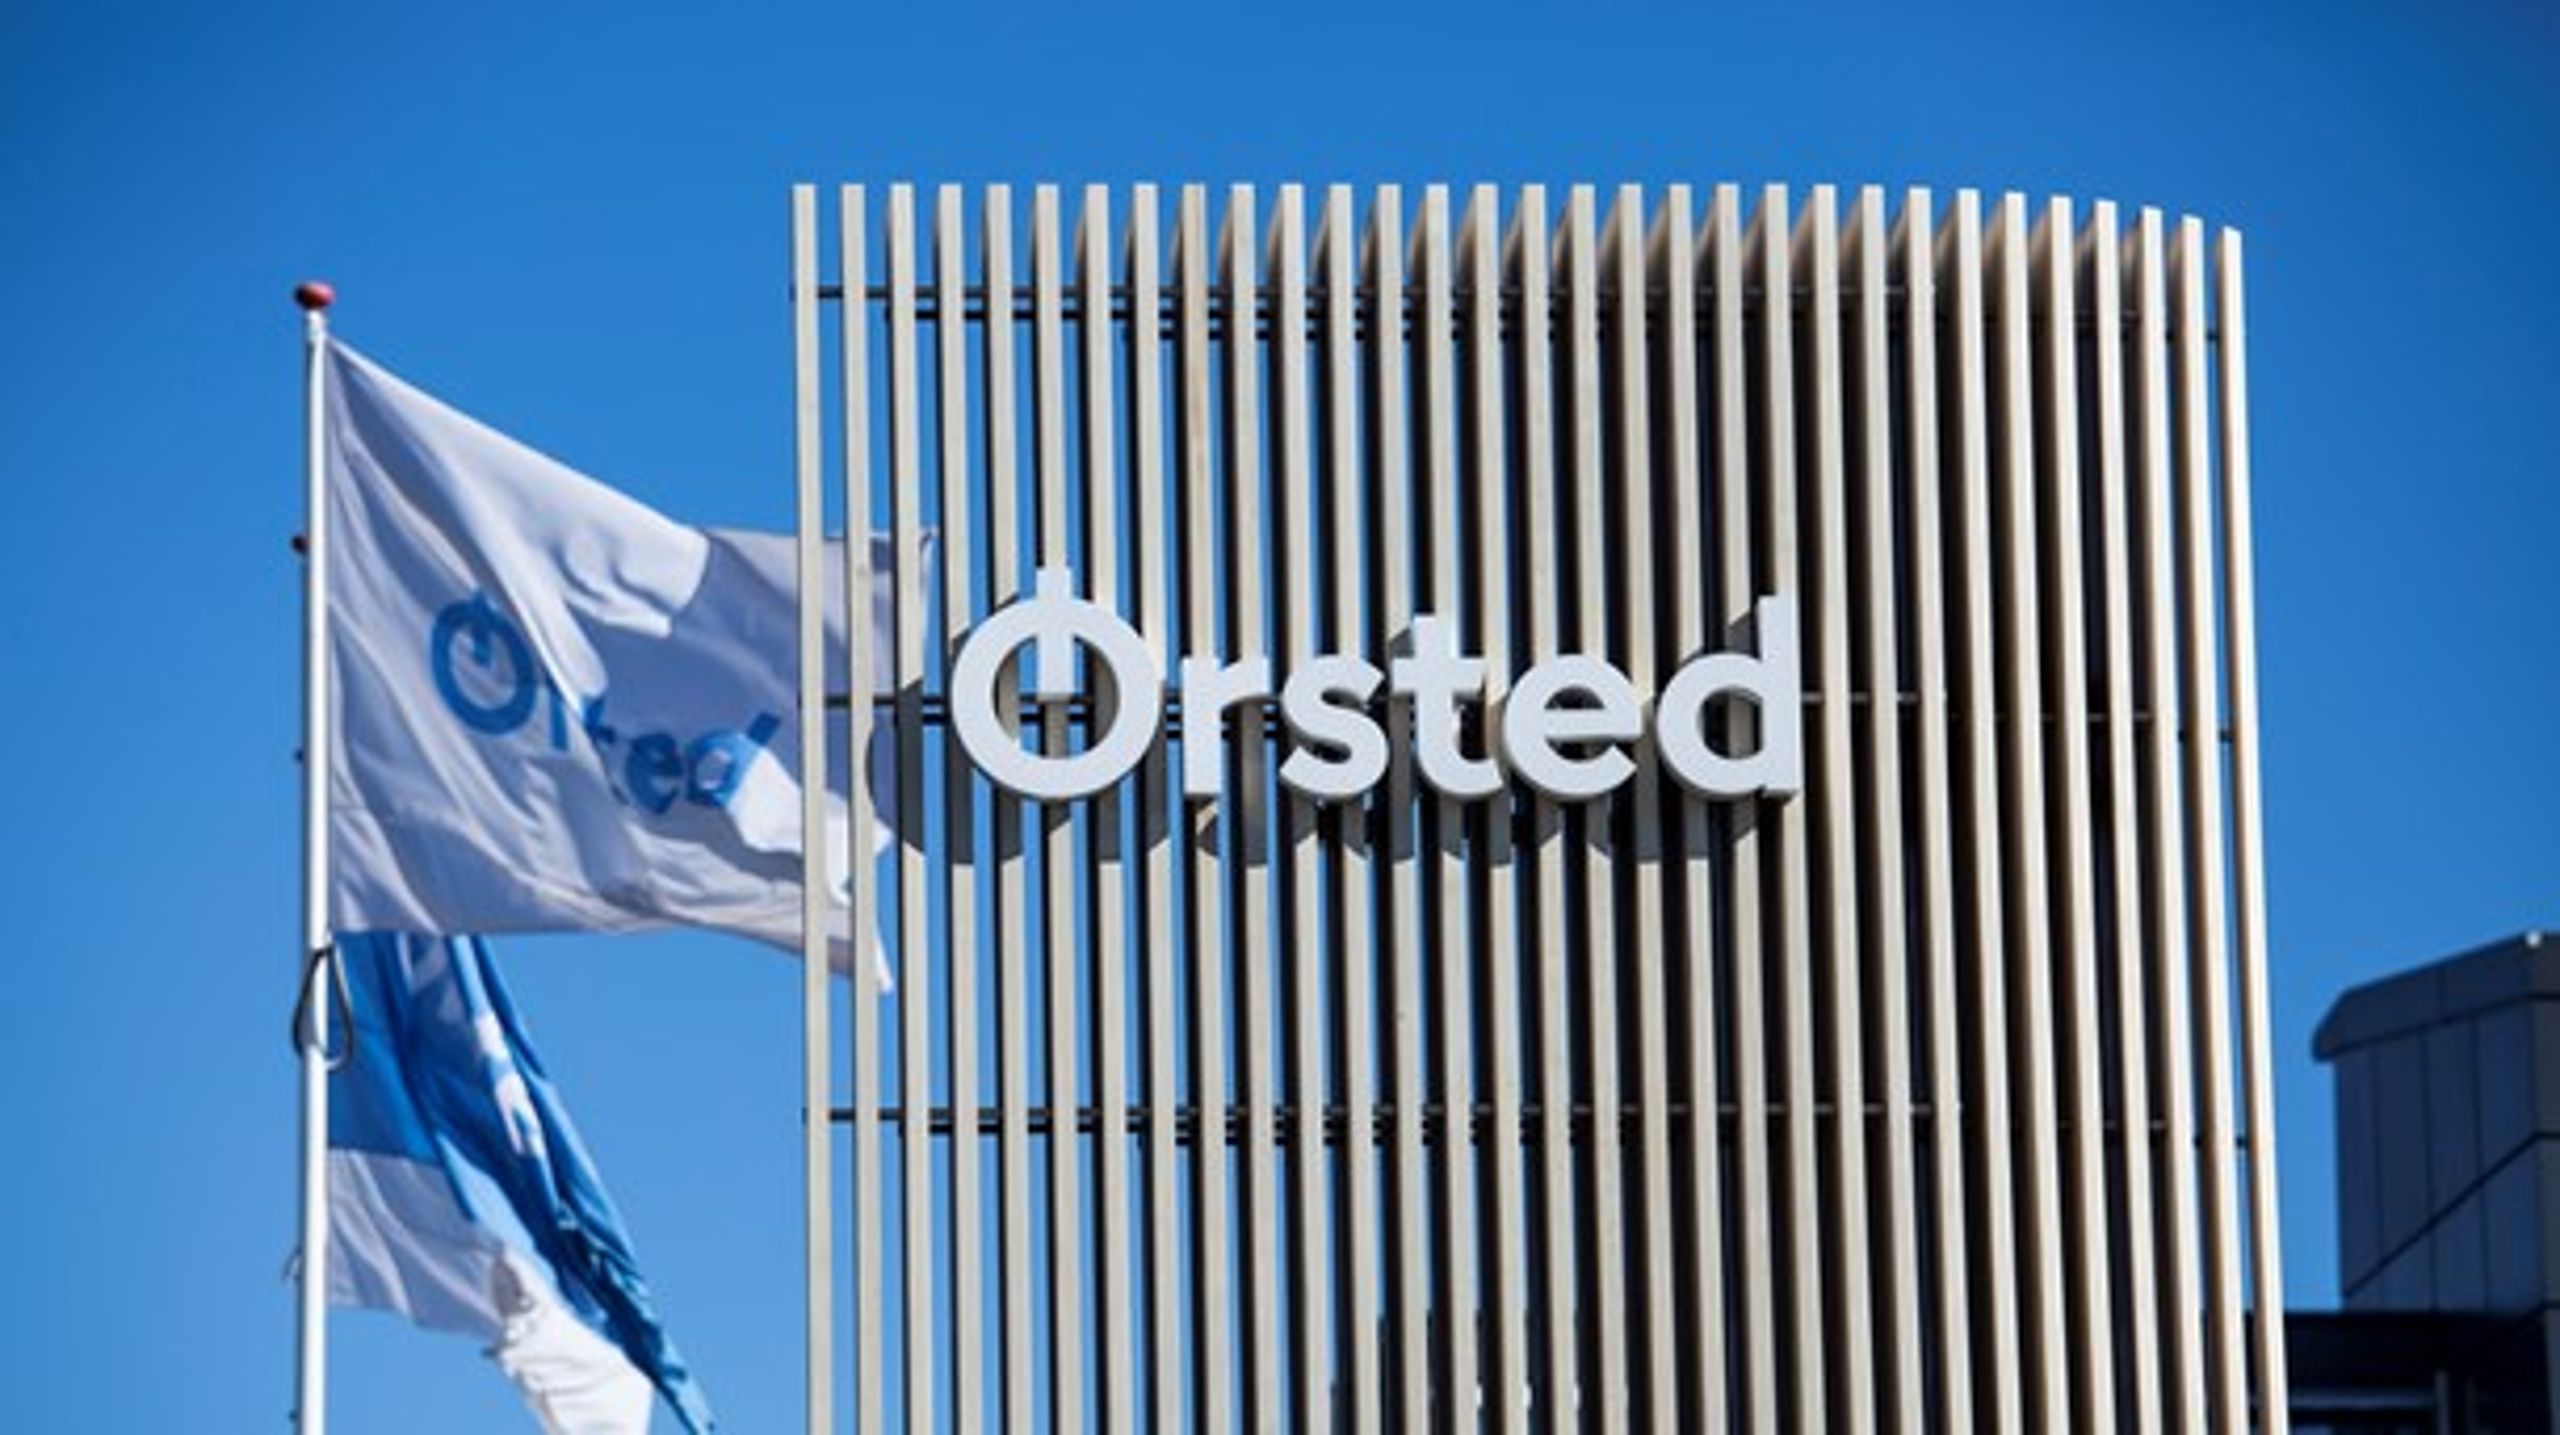 Ørsted slipper for at skifte logo og navn efter at have vundet en sejr over syv af H.C. Ørsteds efterkommere i Højesteret.